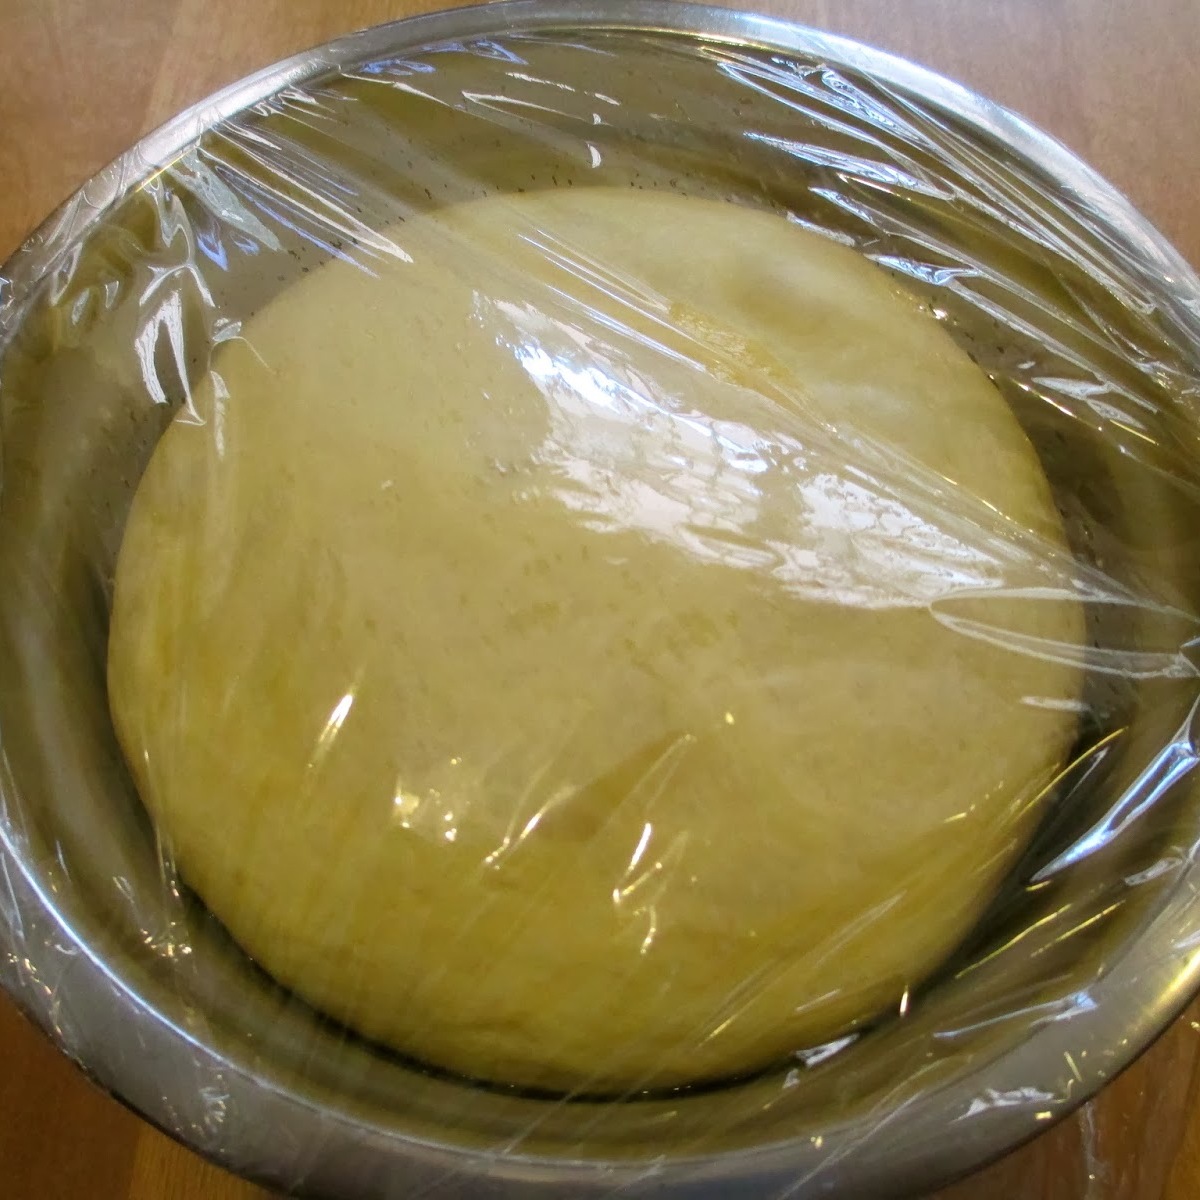 Cách làm bánh crepe sầu riêng vị trà xanh